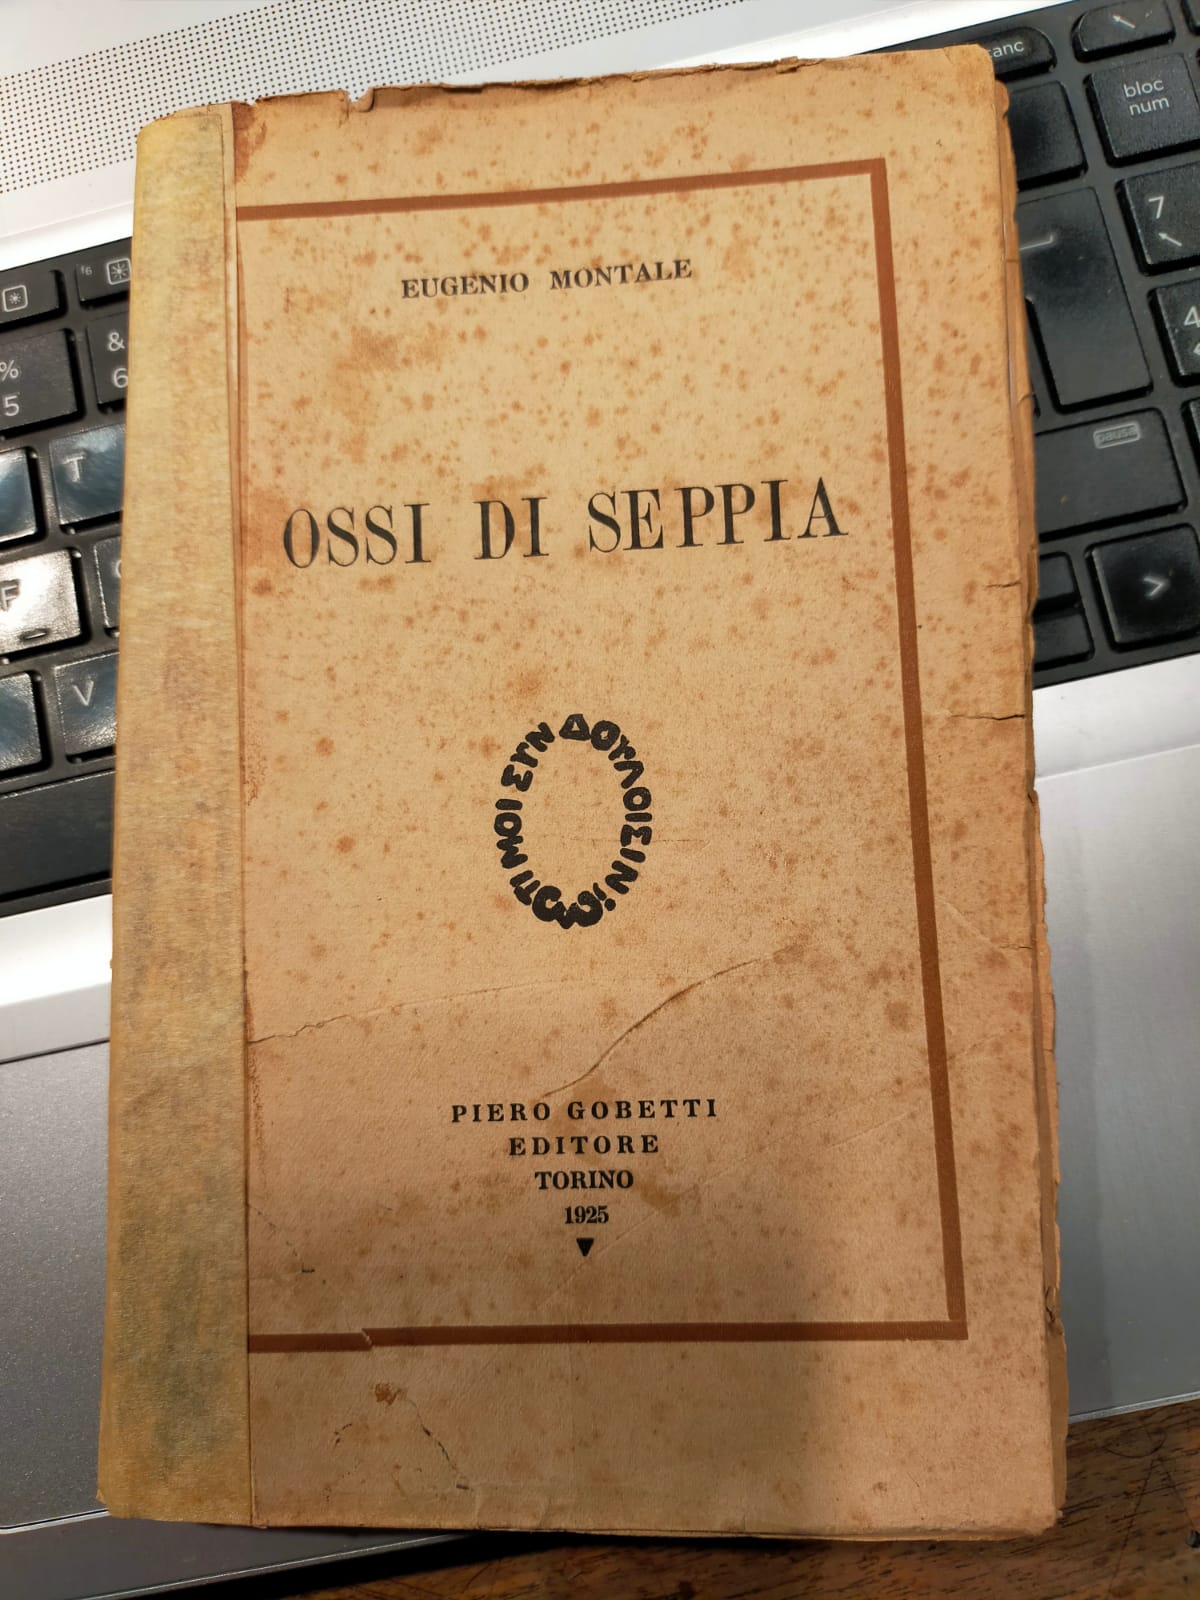 La prima edizione di “Ossi di Seppia” di Eugenio Montale (Piero Gobetti, 1925) trovata oggi in un mercatino a Cremona